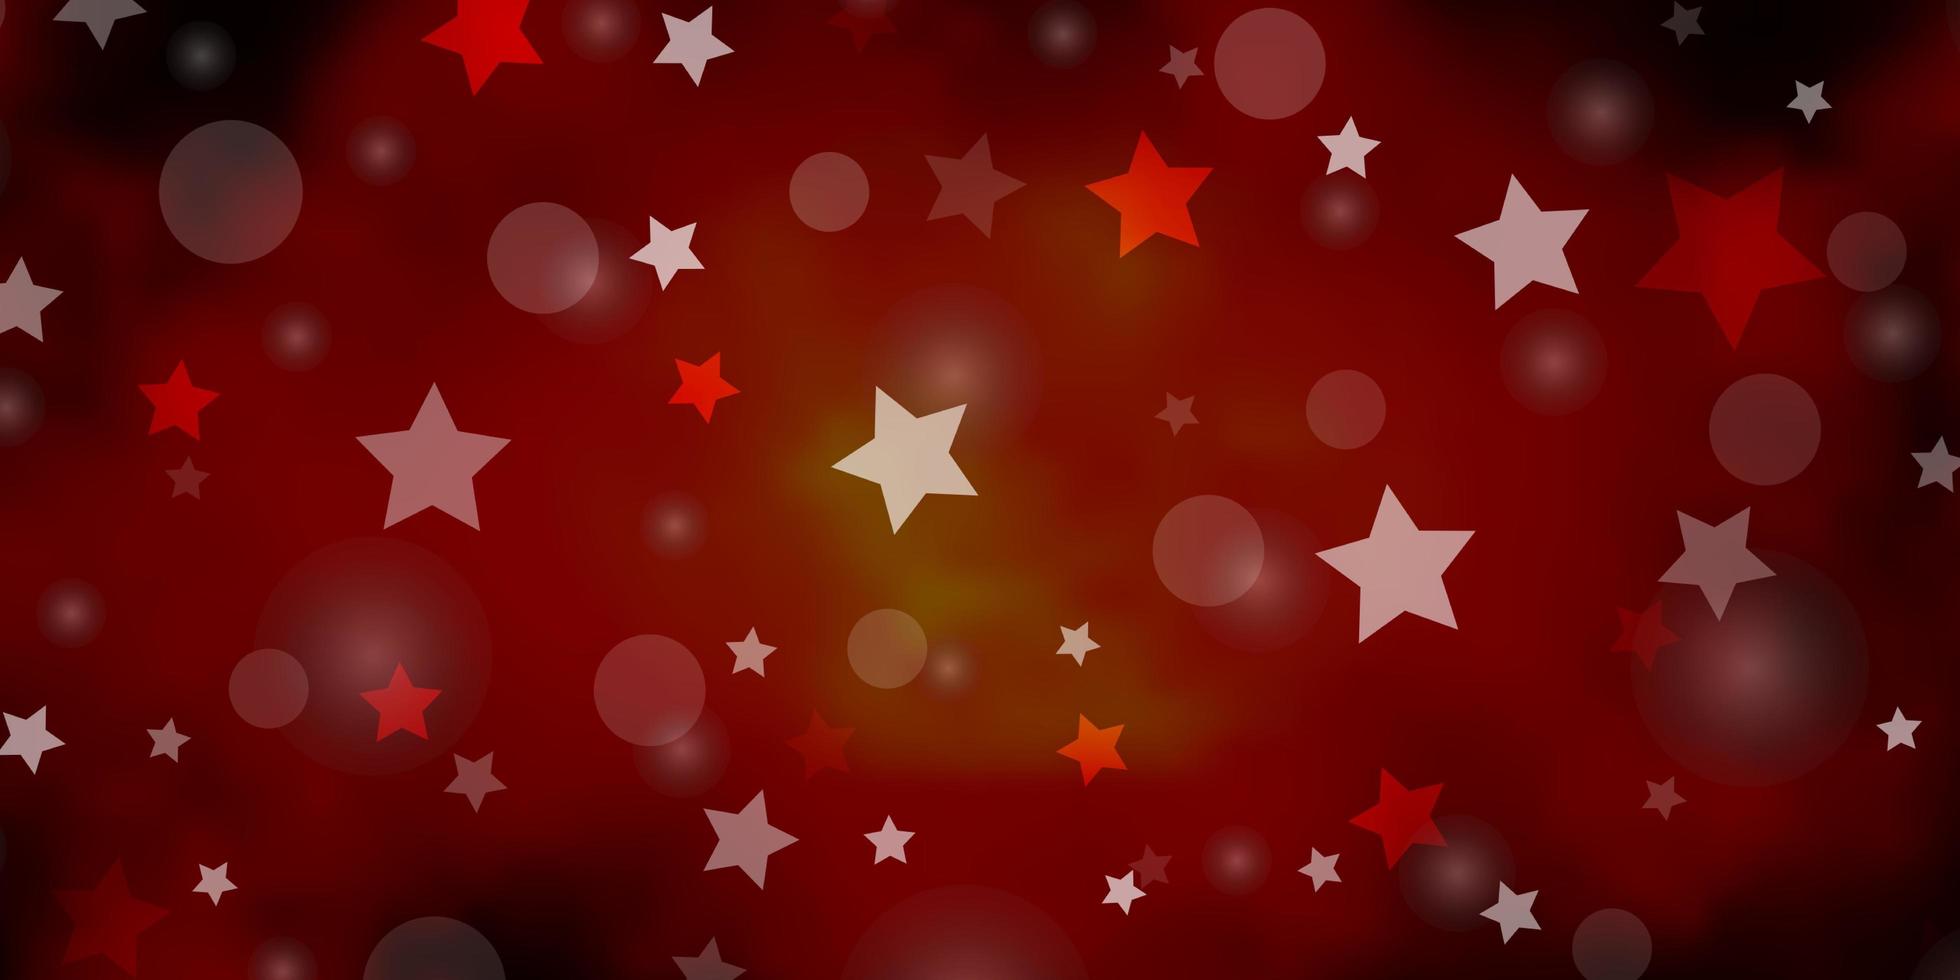 textura de vector rojo oscuro con círculos, estrellas. Ilustración abstracta de brillo con gotas de colores, estrellas. diseño para papel pintado, fabricantes de telas.